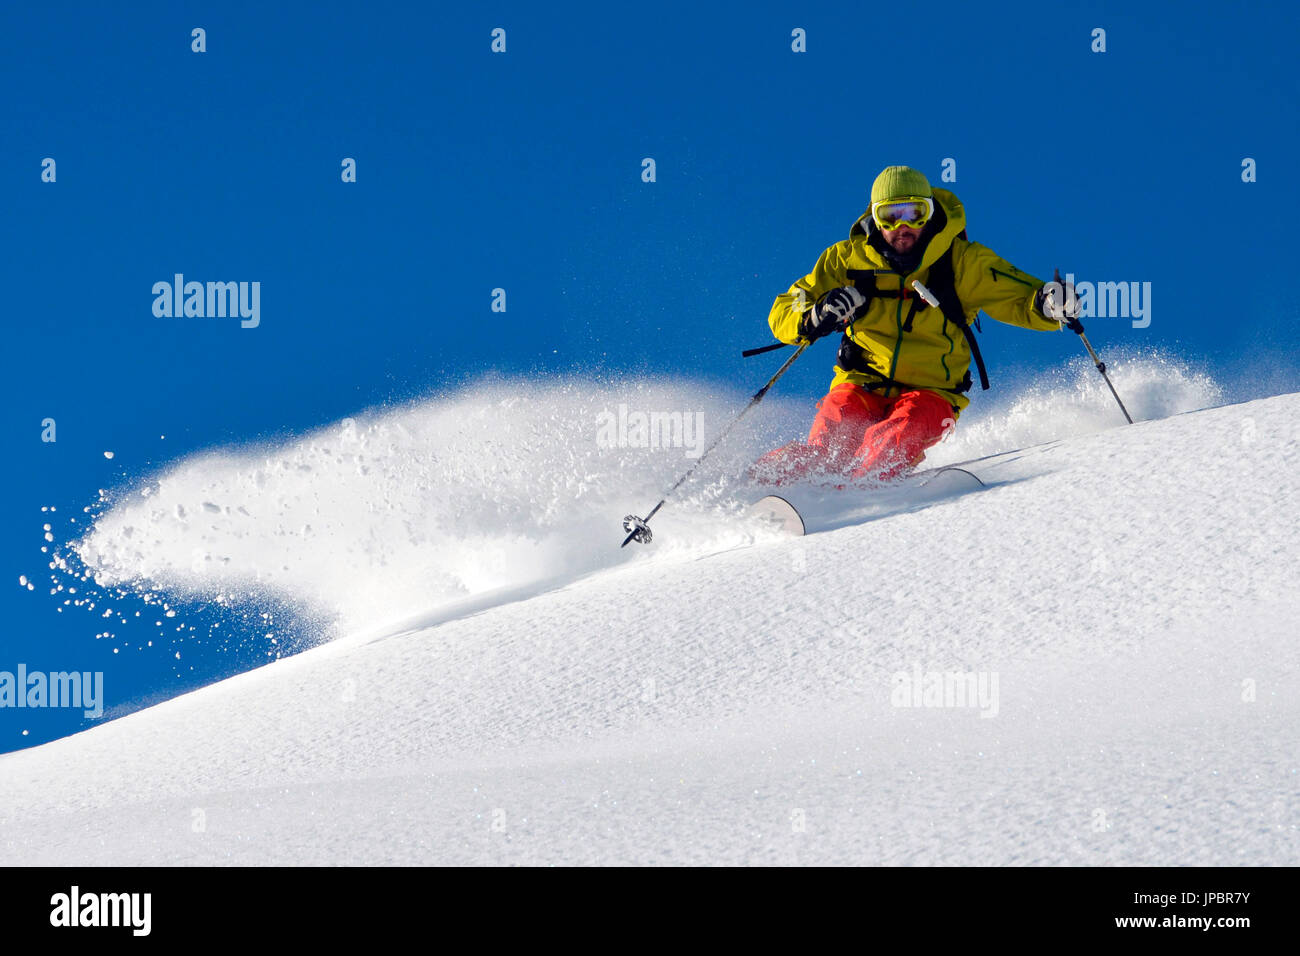 Freerider ski with powder snow, Aosta Valley,Italy Stock Photo - Alamy